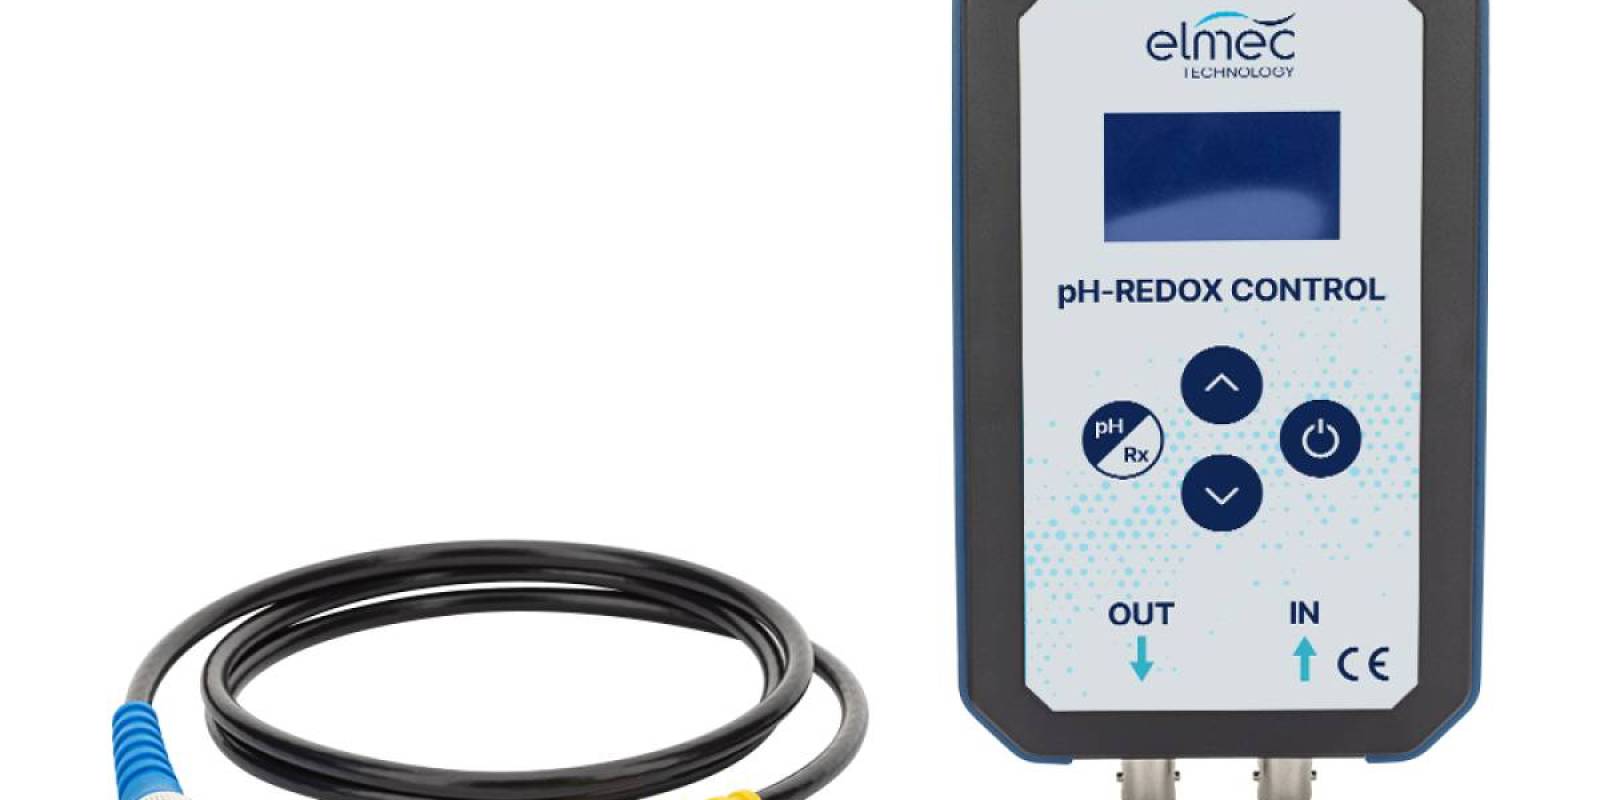 Le nouveau simulateur Elmec Technology pH/REDOX CONTROL disponible sur le marché européen